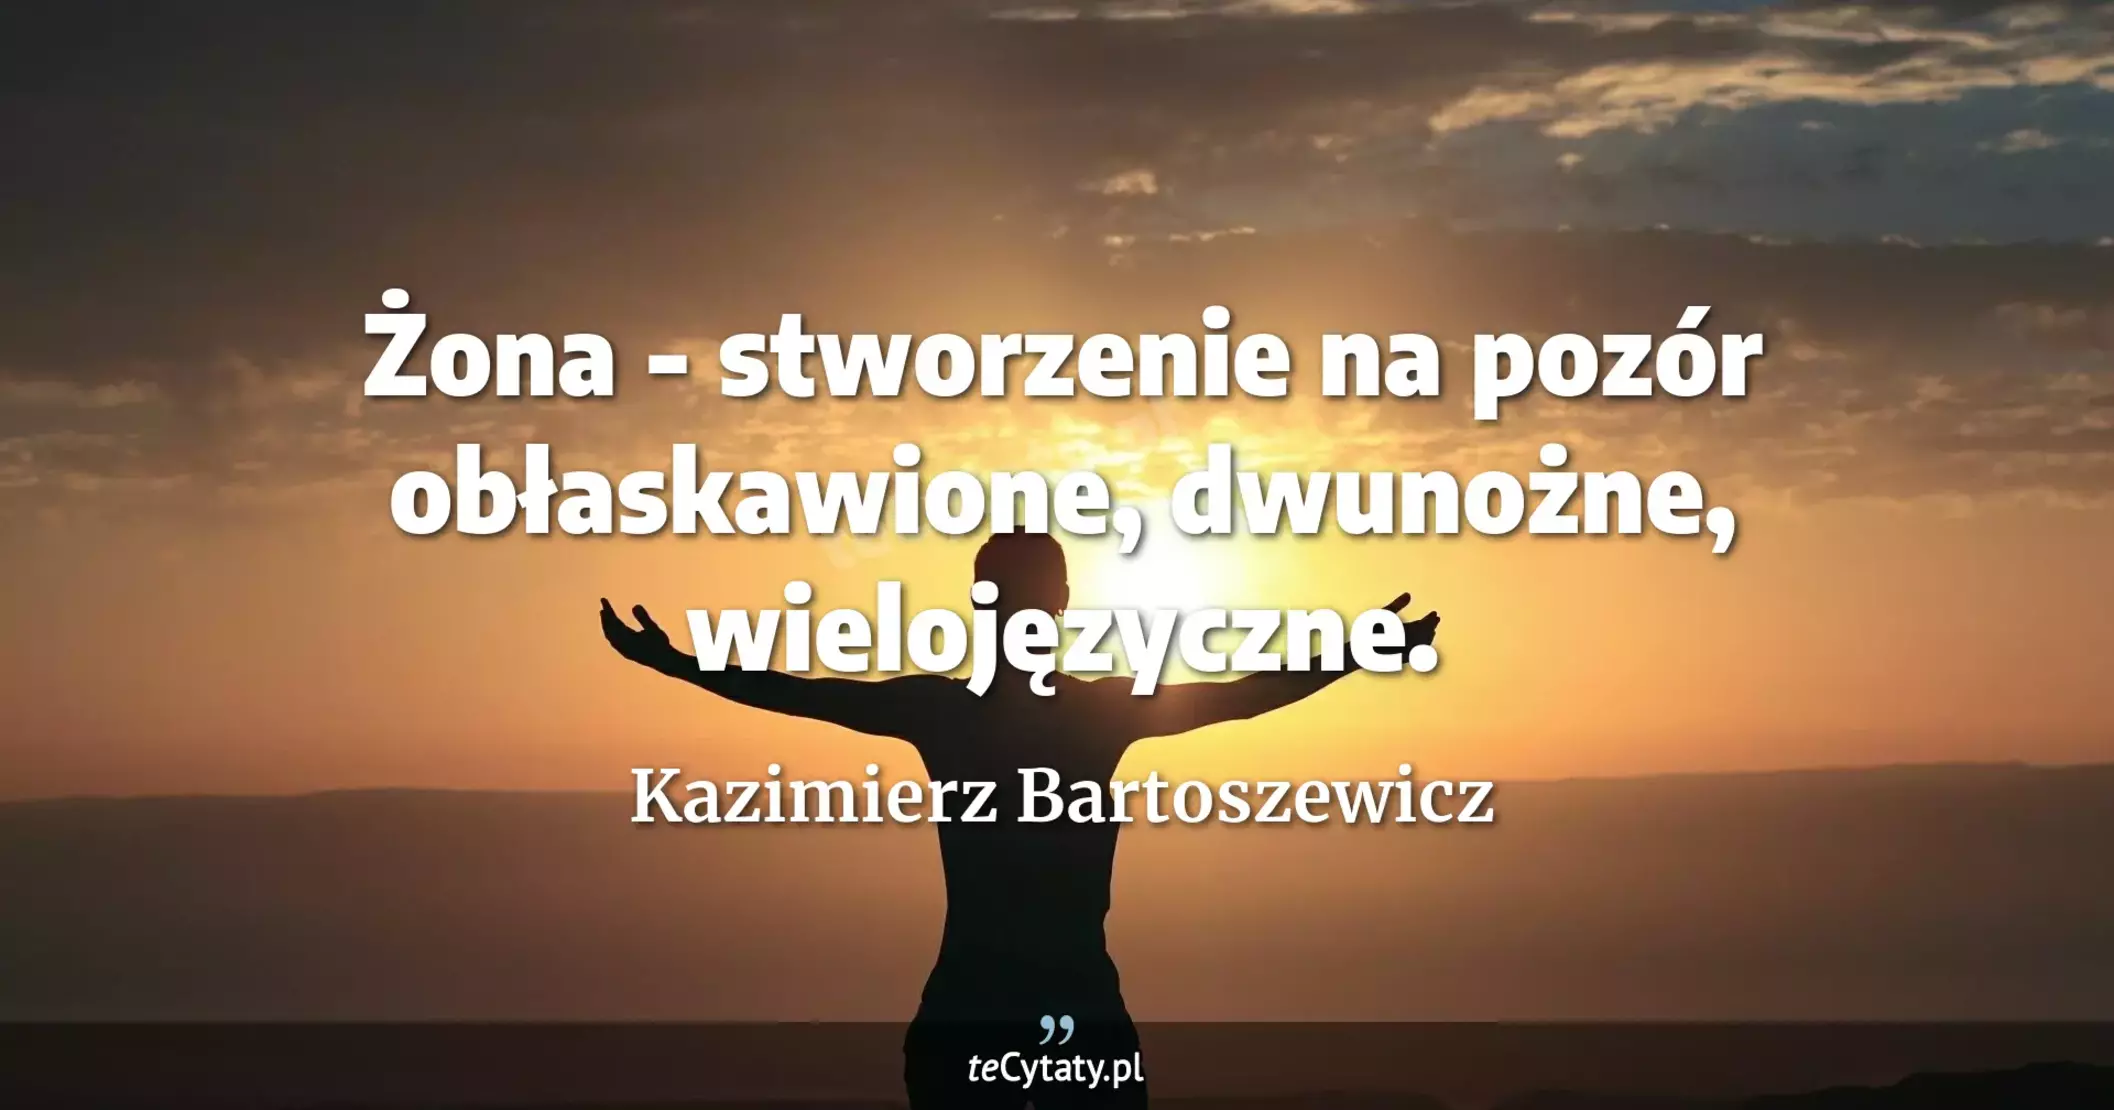 Żona - stworzenie na pozór obłaskawione, dwunożne, wielojęzyczne. - Kazimierz Bartoszewicz